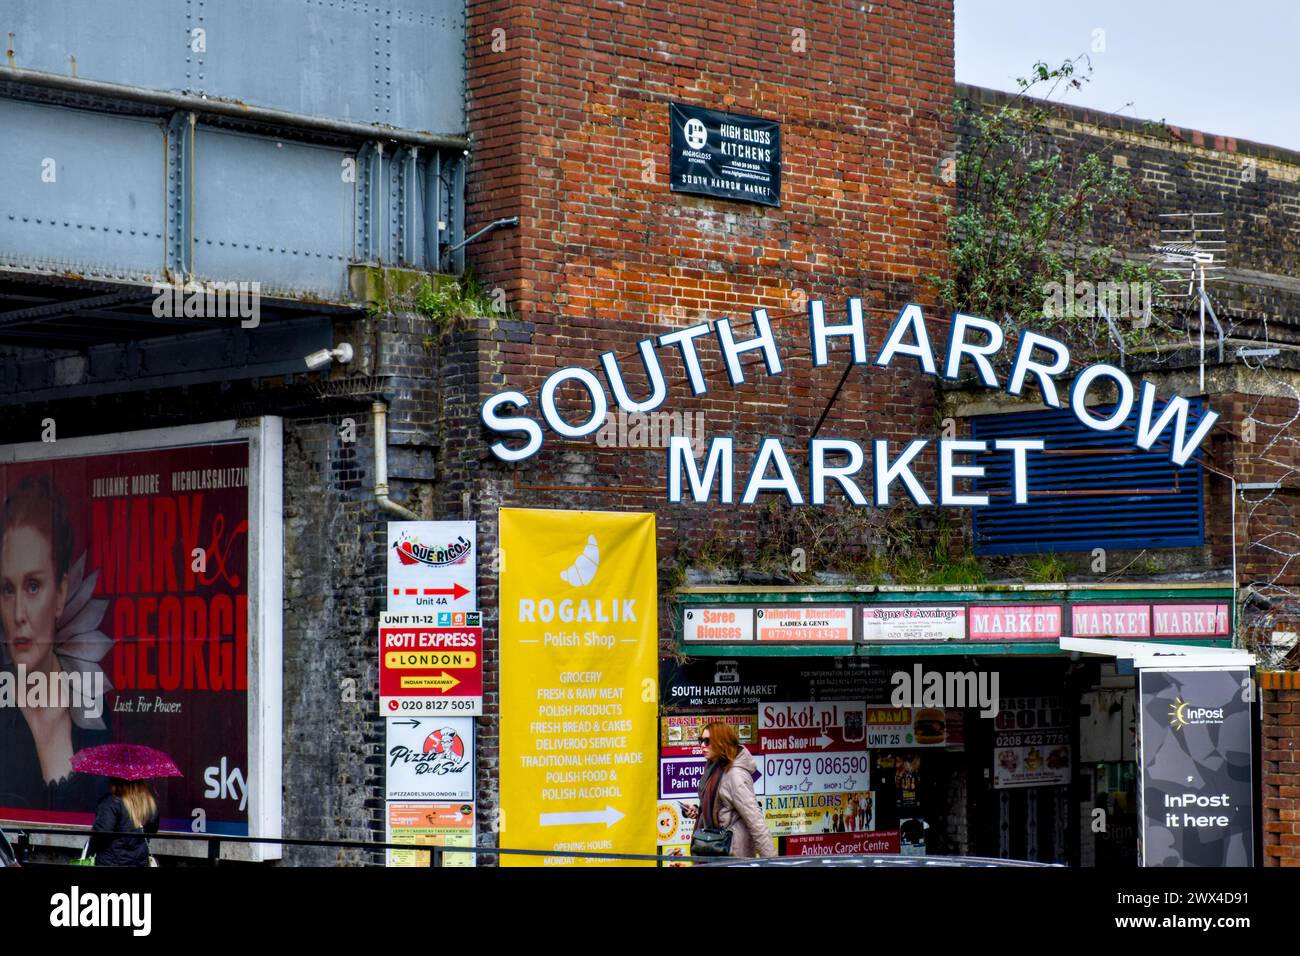 South Harrow Market, Northolt Road, Harrow, Borough of Harrow, London, England, UK Stock Photo